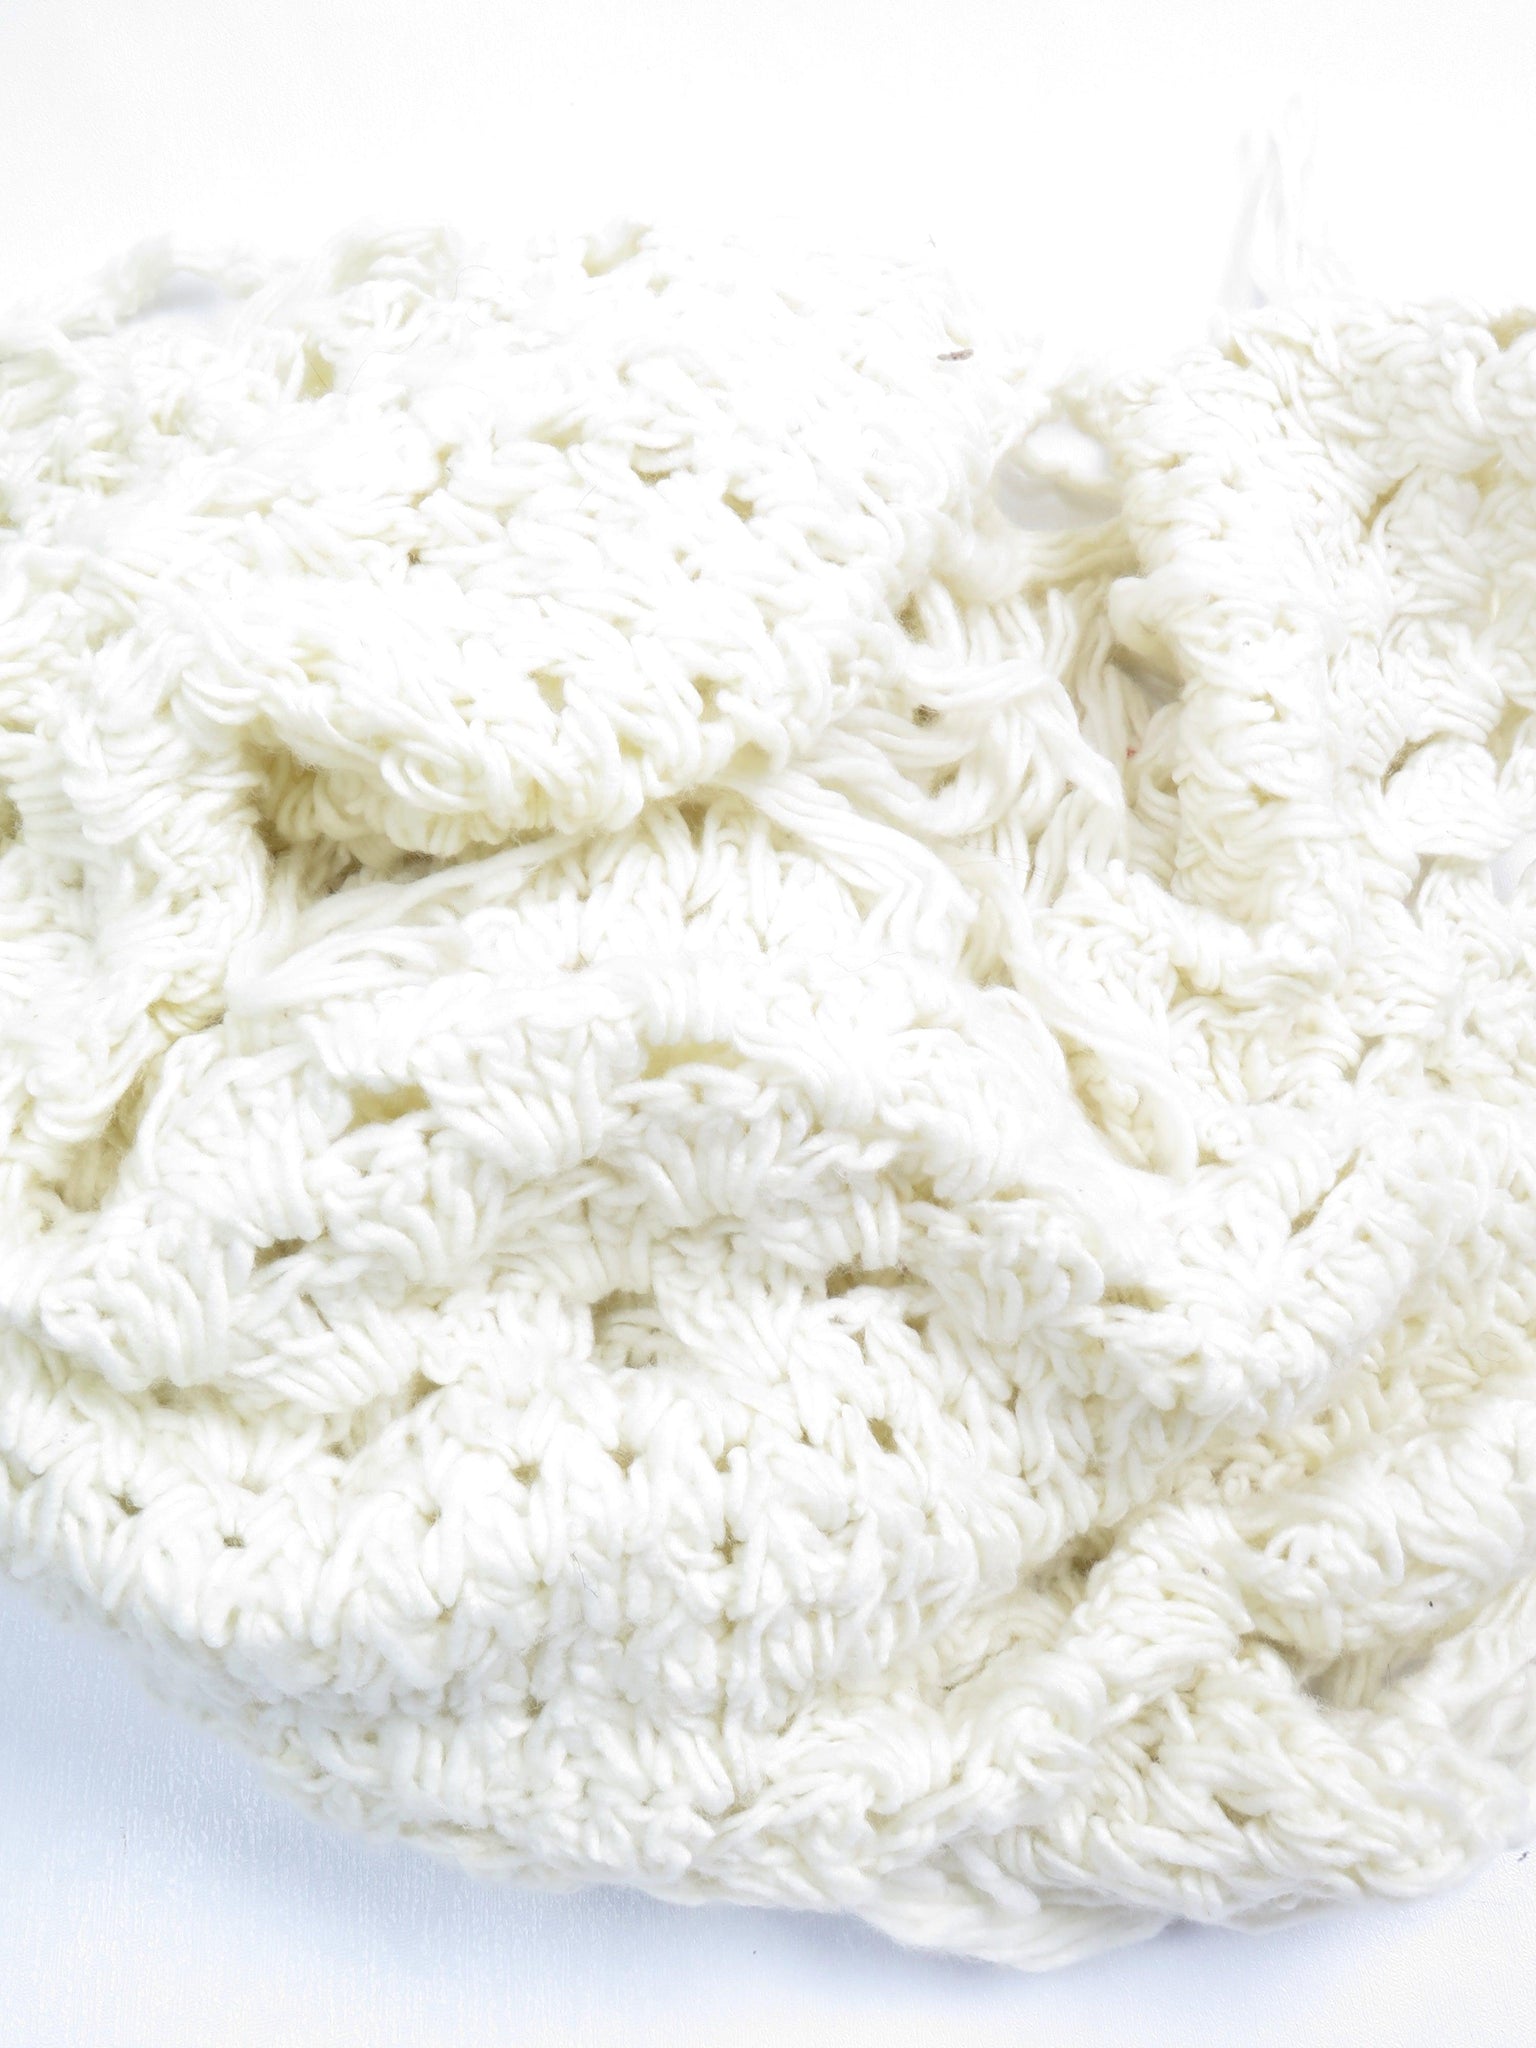 Irish Cream Hand Crochet Shawl/Scarf - The Harlequin